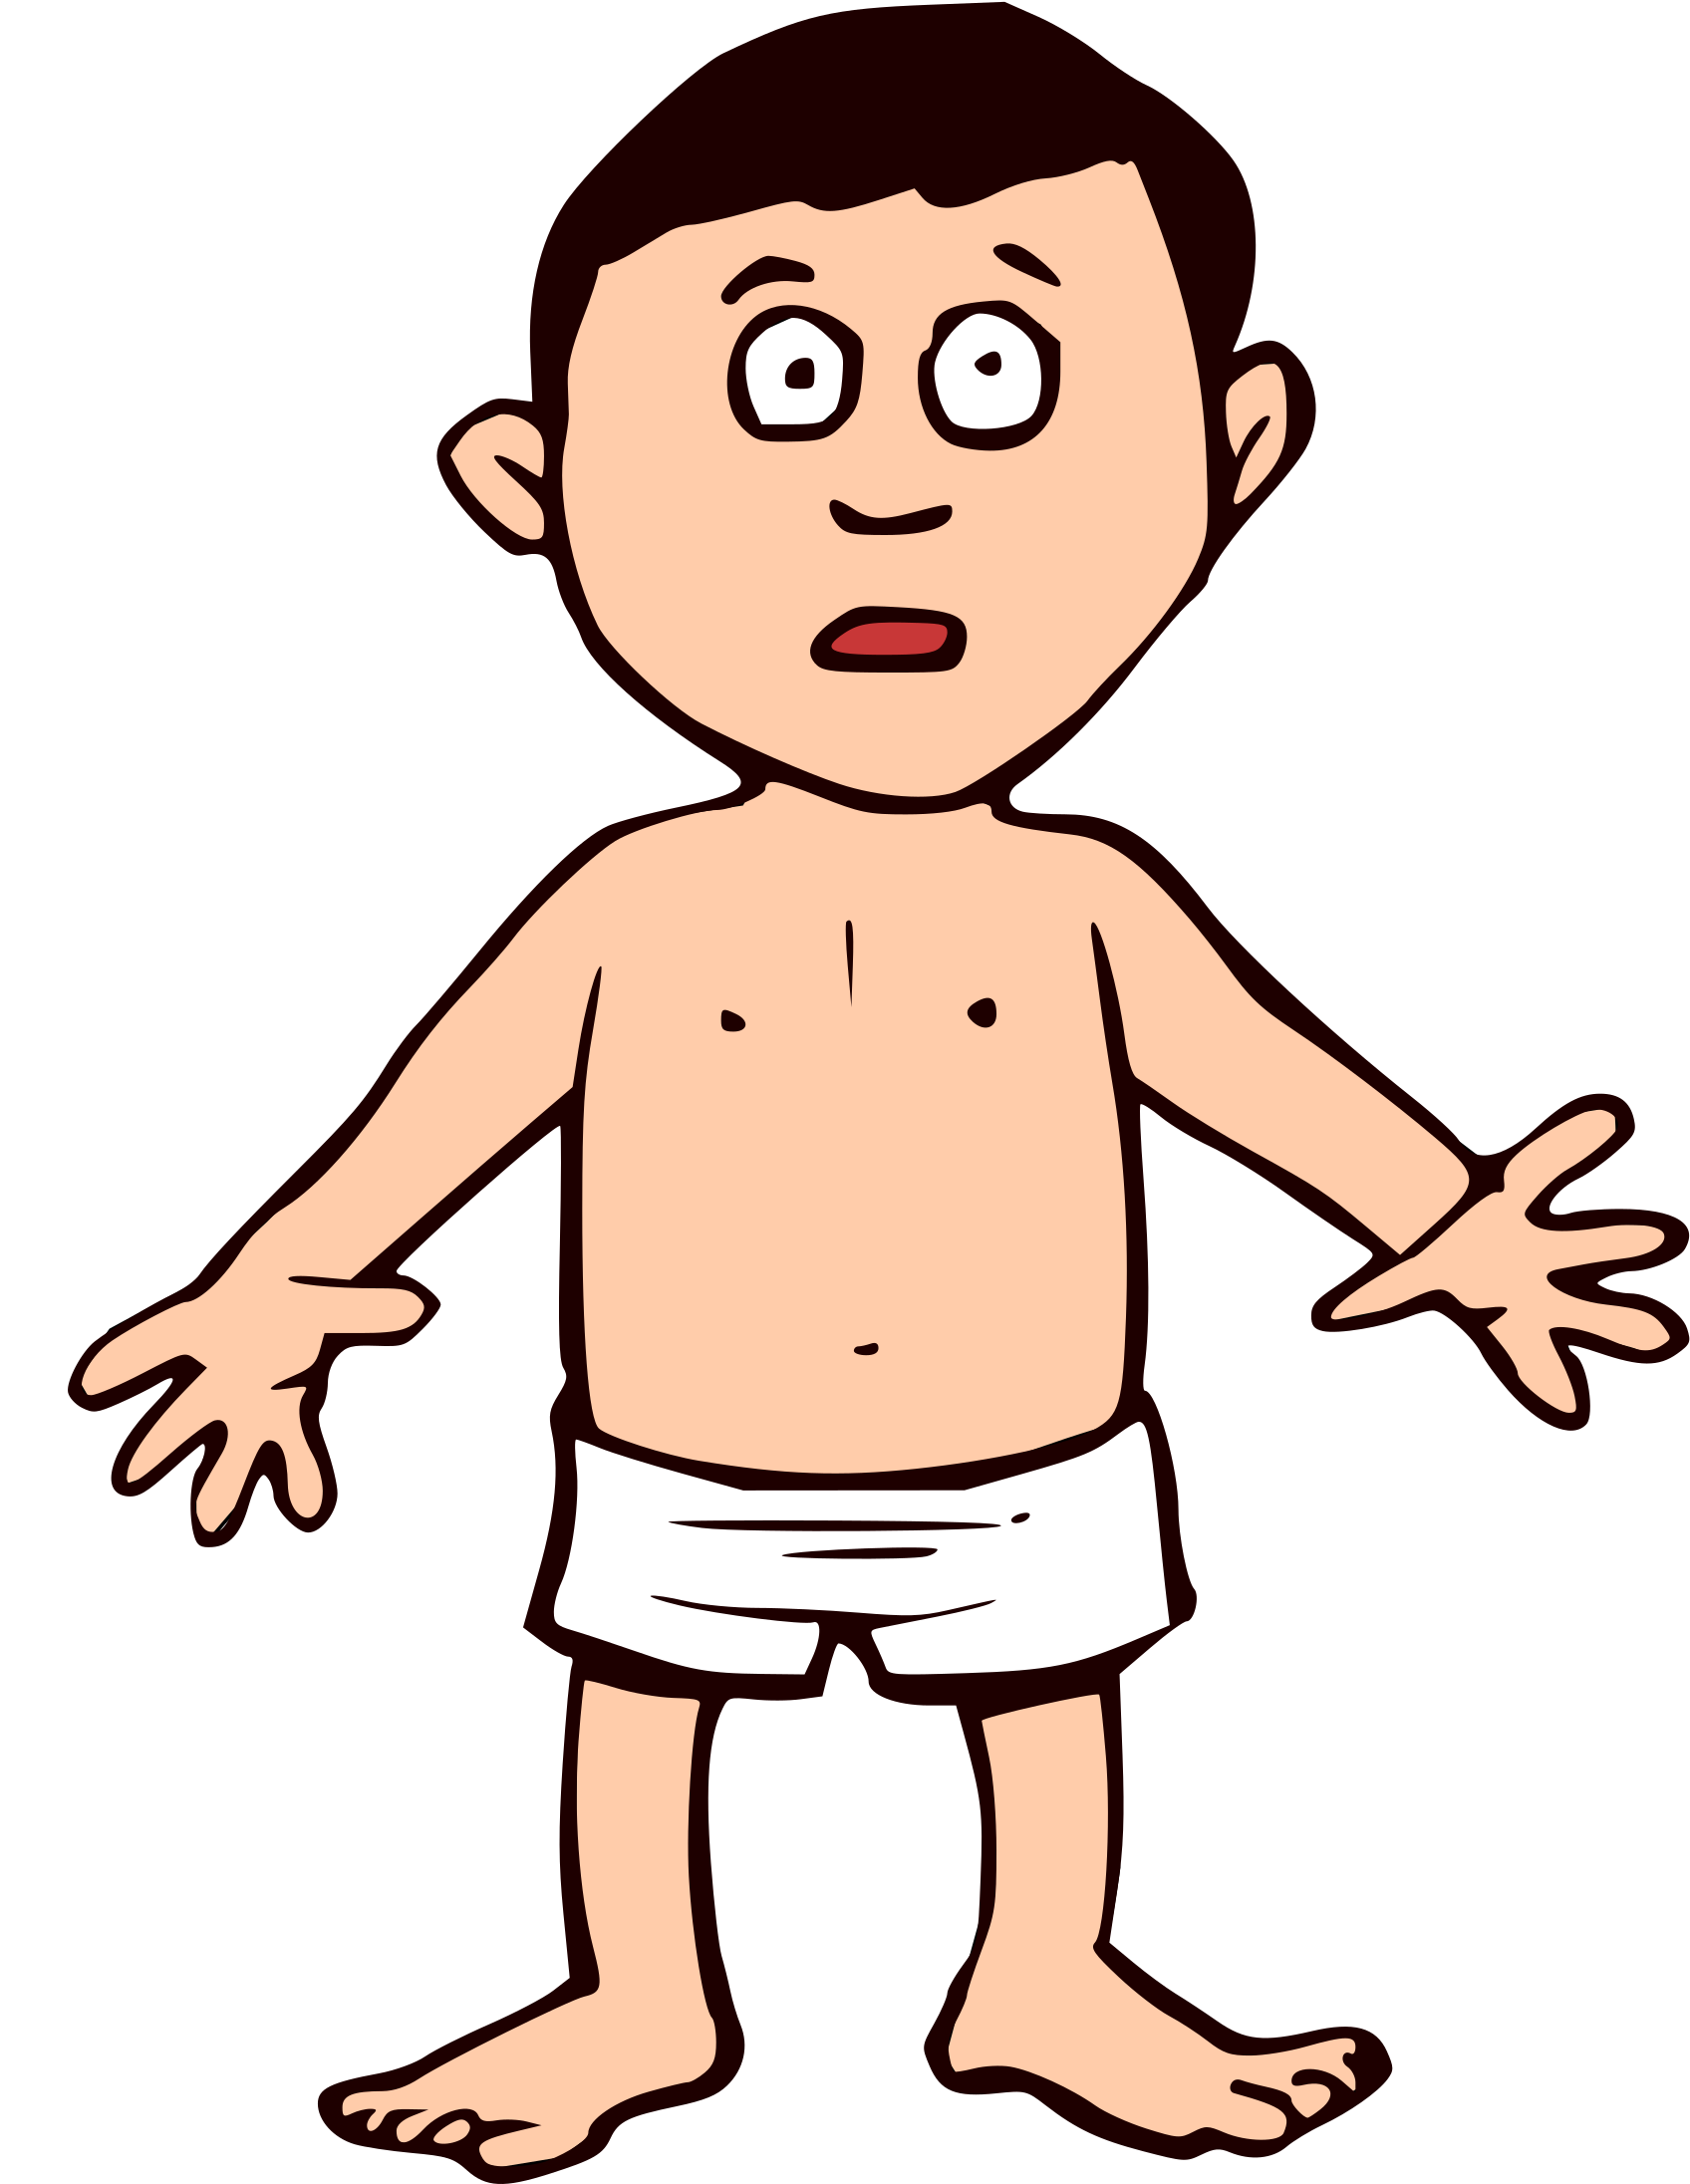 Man - Cartoon Boy In Underwear (2575x2400)